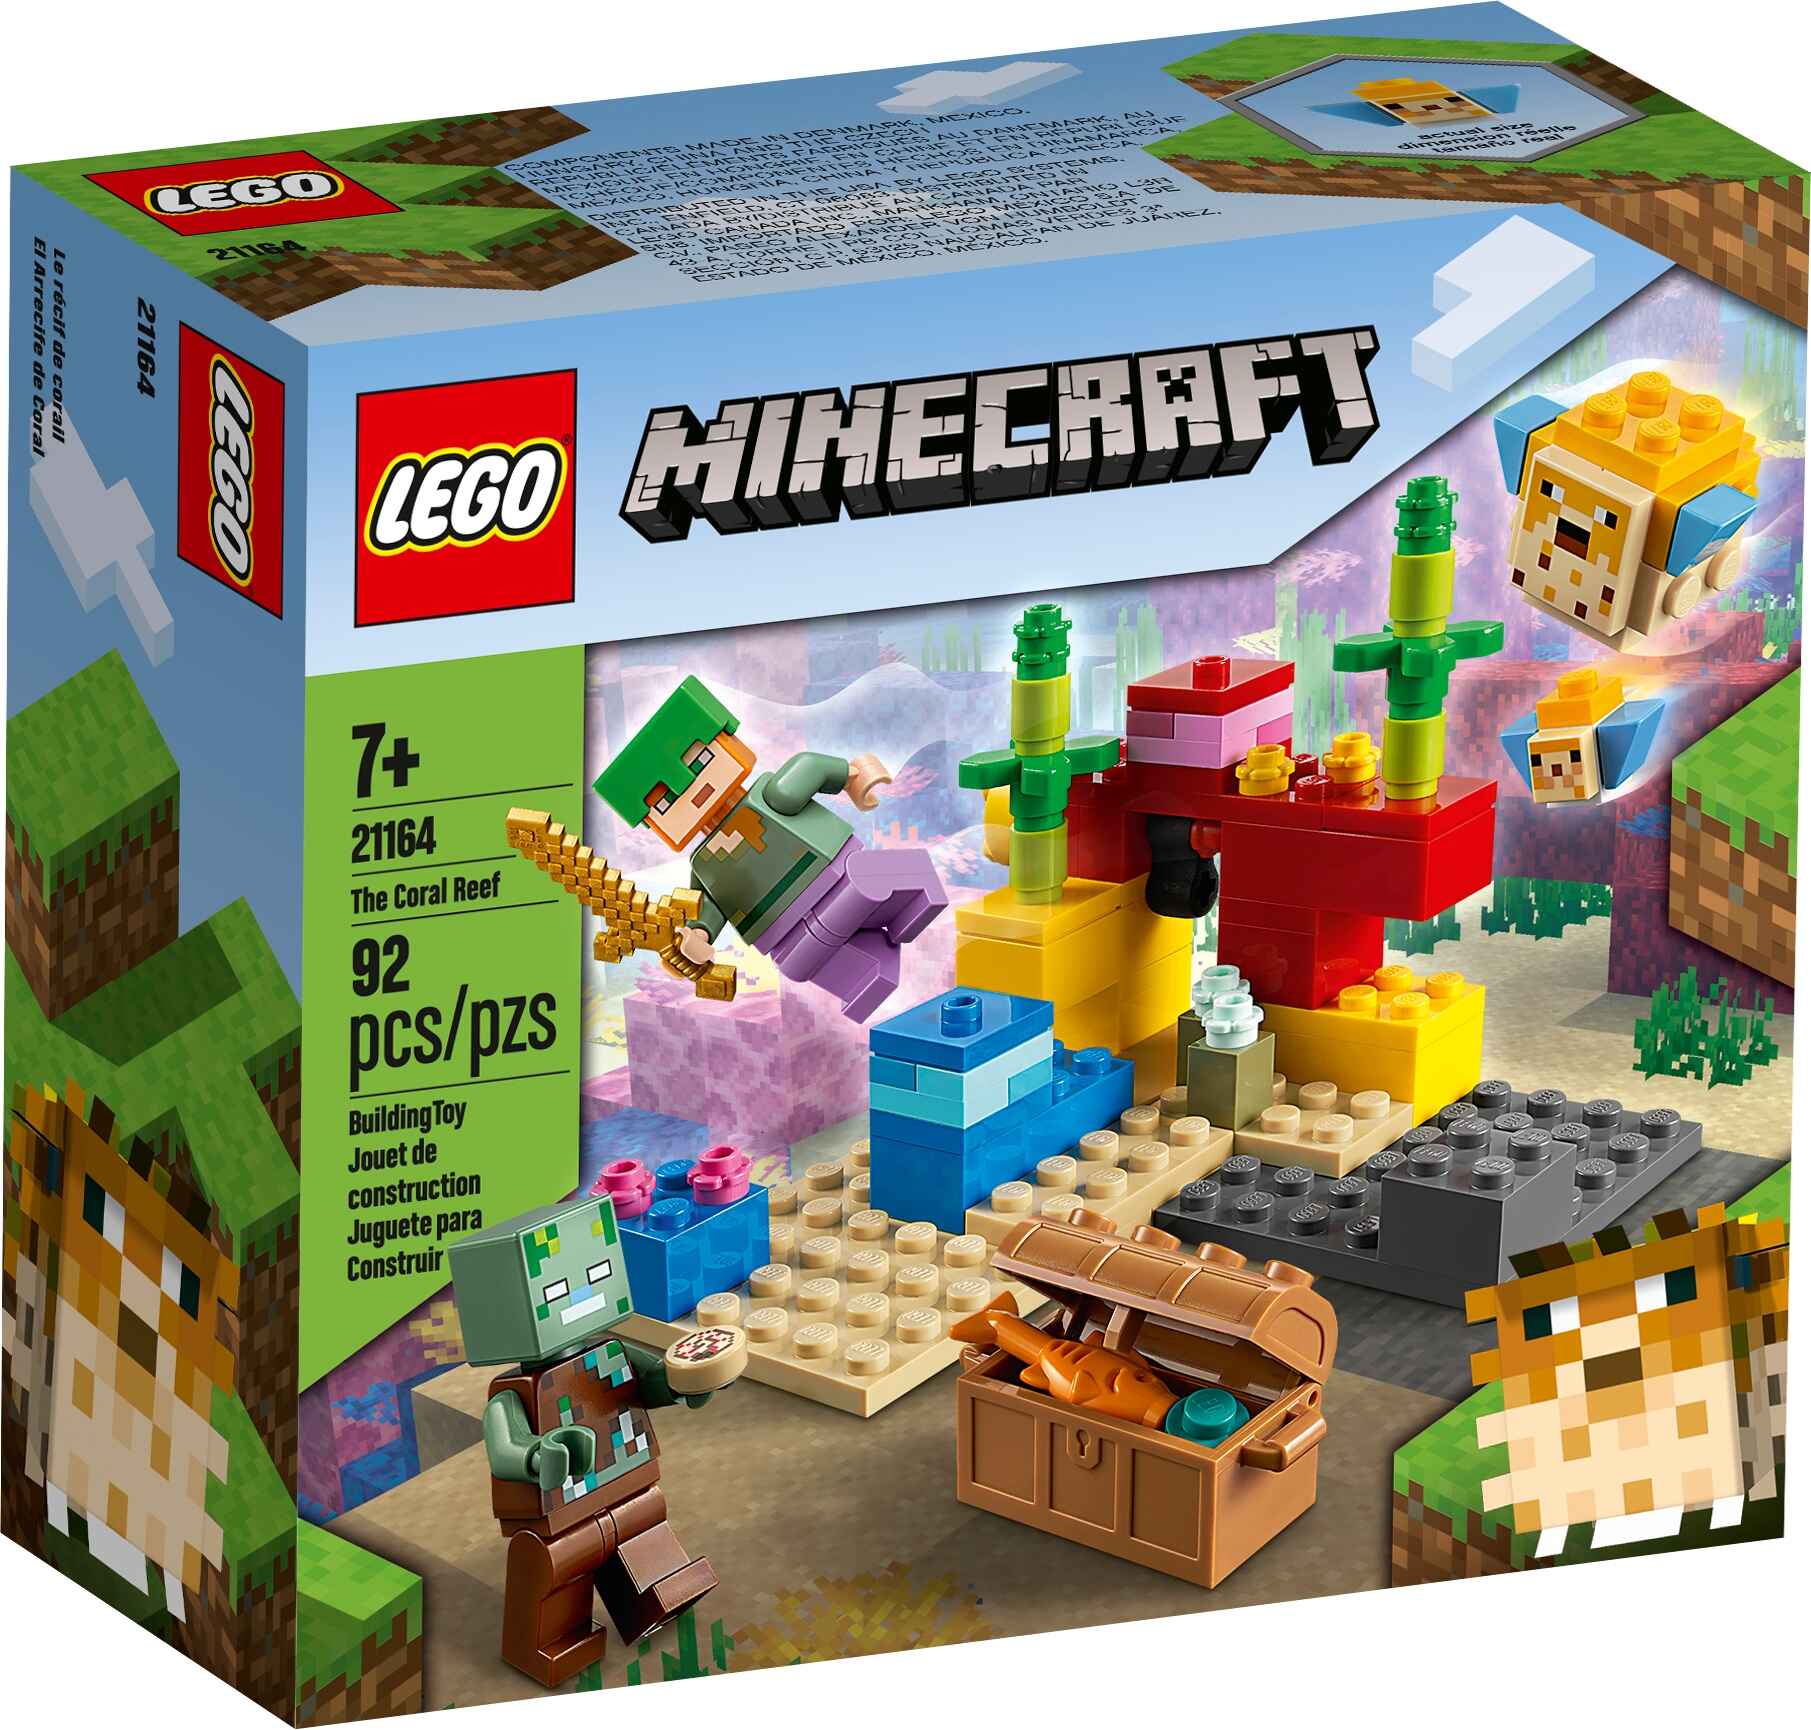 LEGO 21164 Minecraft Das Korallenriff Bauset mit Alex, 1 Ertrunkener, 2 Fische